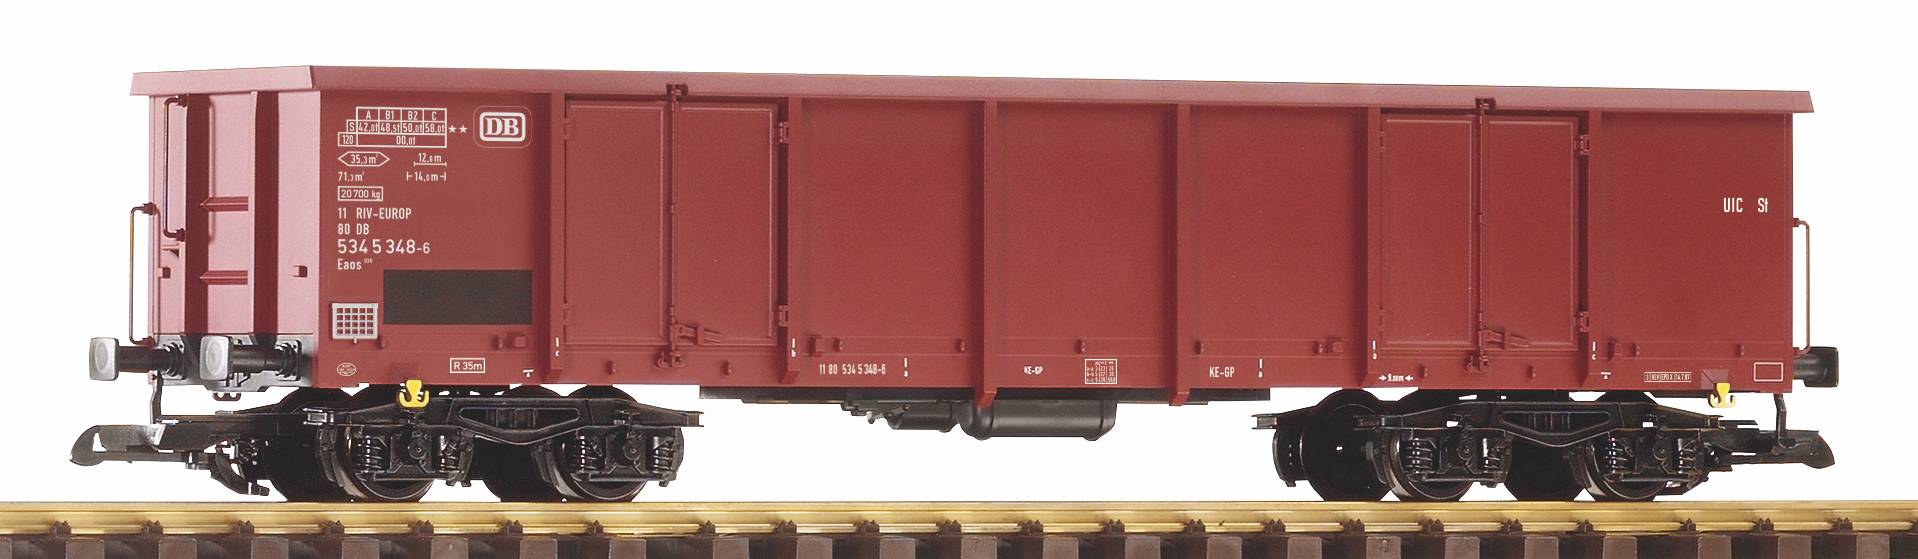 G offener Güterwagen DB IV, Art. nr. 37012, nr. 534 5 5 348-6